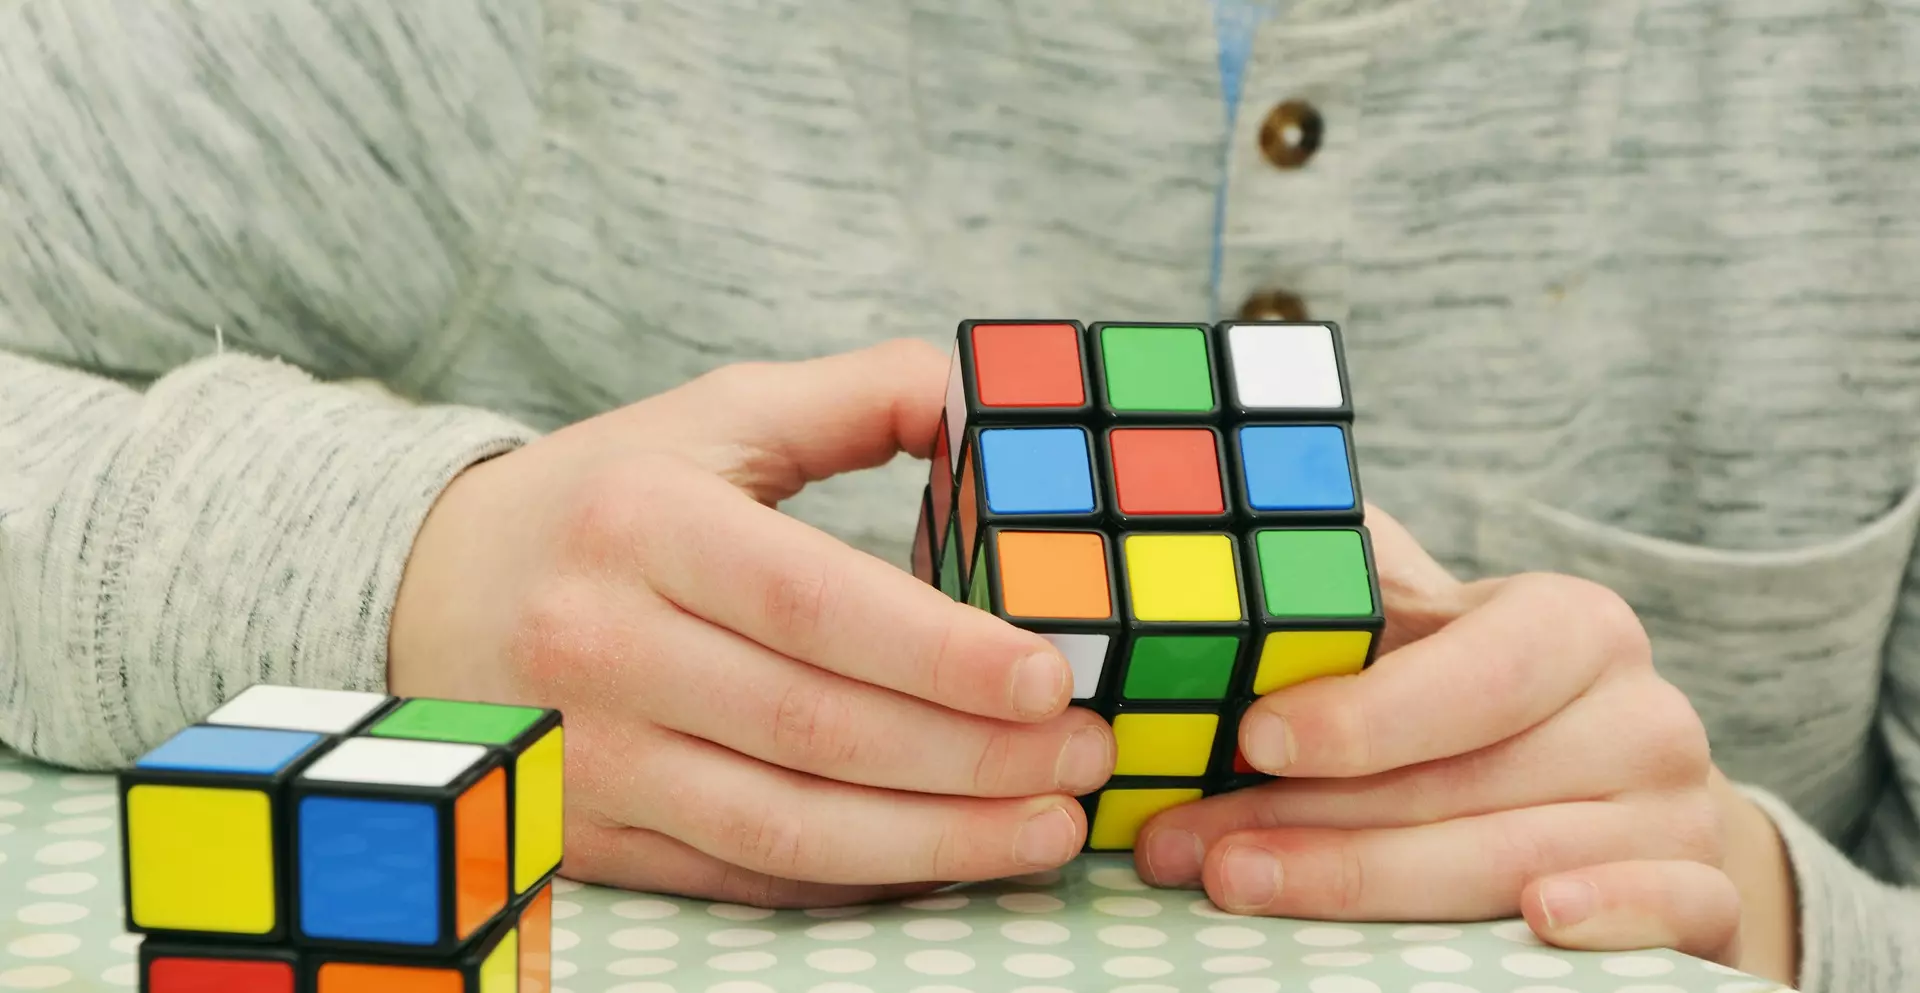 Resolvemos el cubo Rubik gracias a OrCam MyEye 2.0 - OrCam